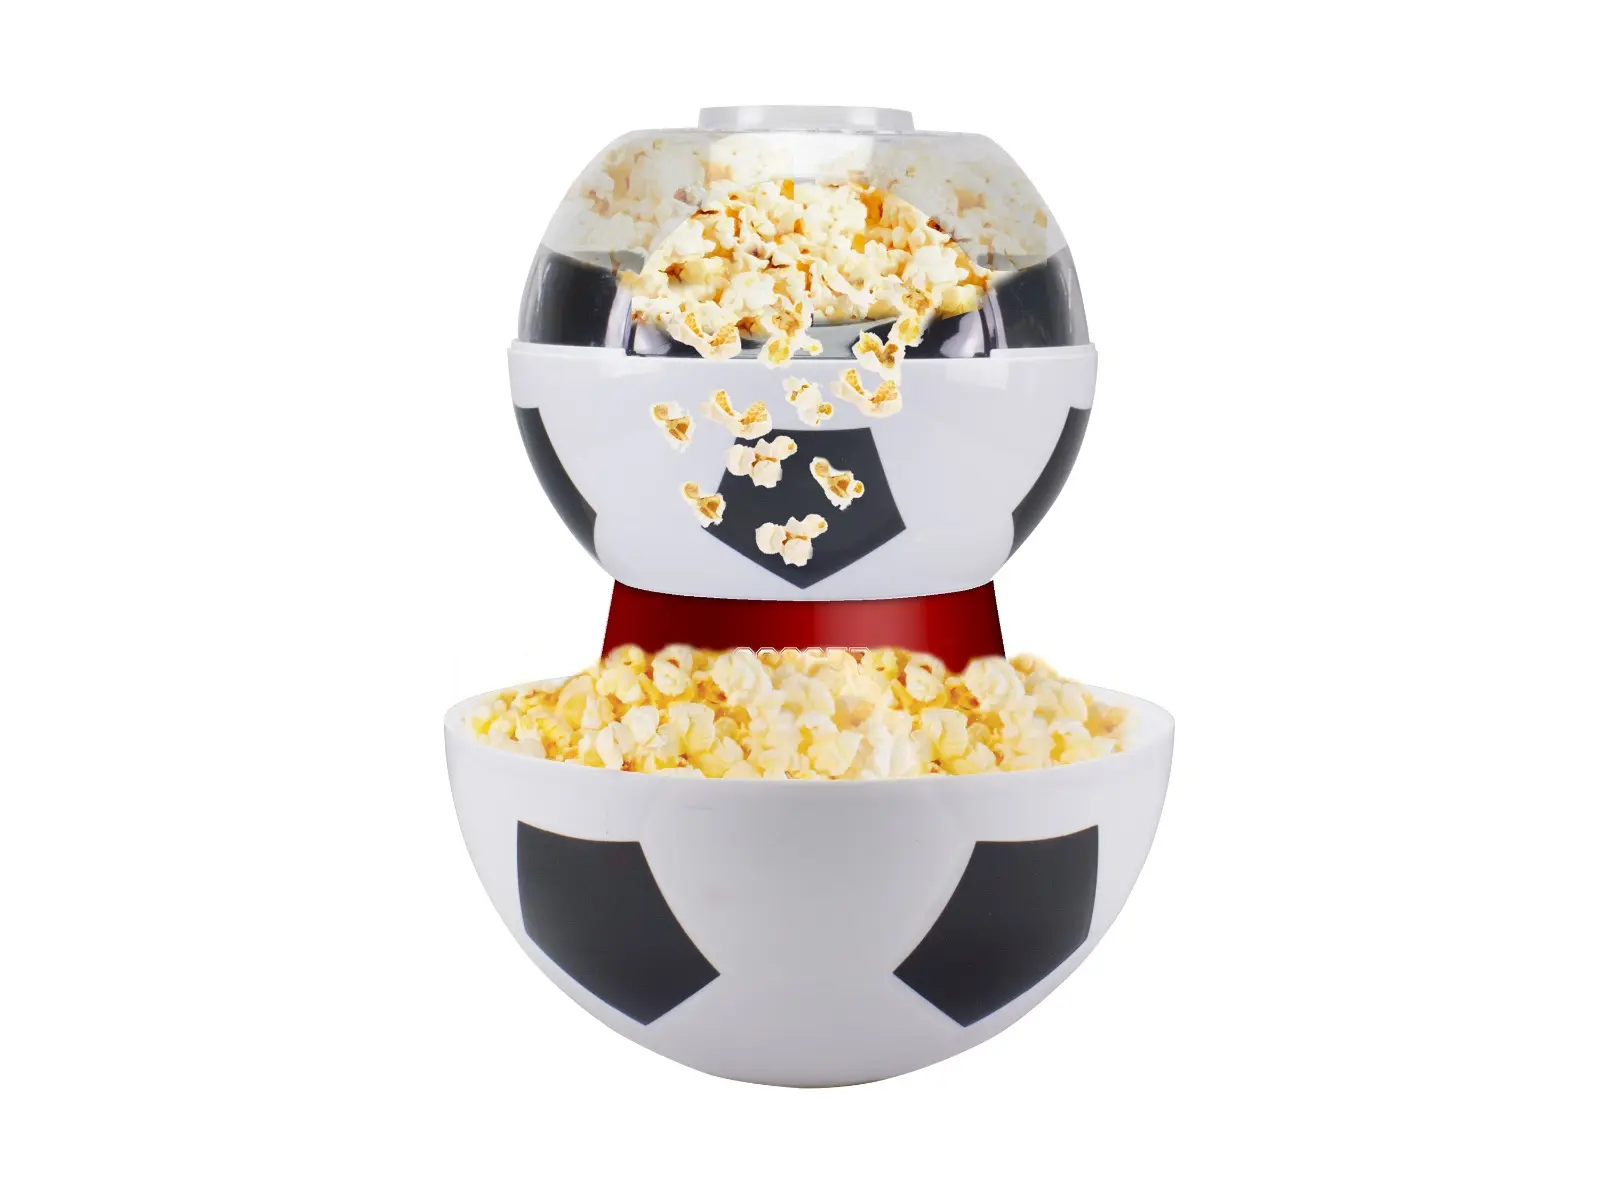 Aparat de preparat popcorn, Beper P101CUD051, 1200 W, Rosu